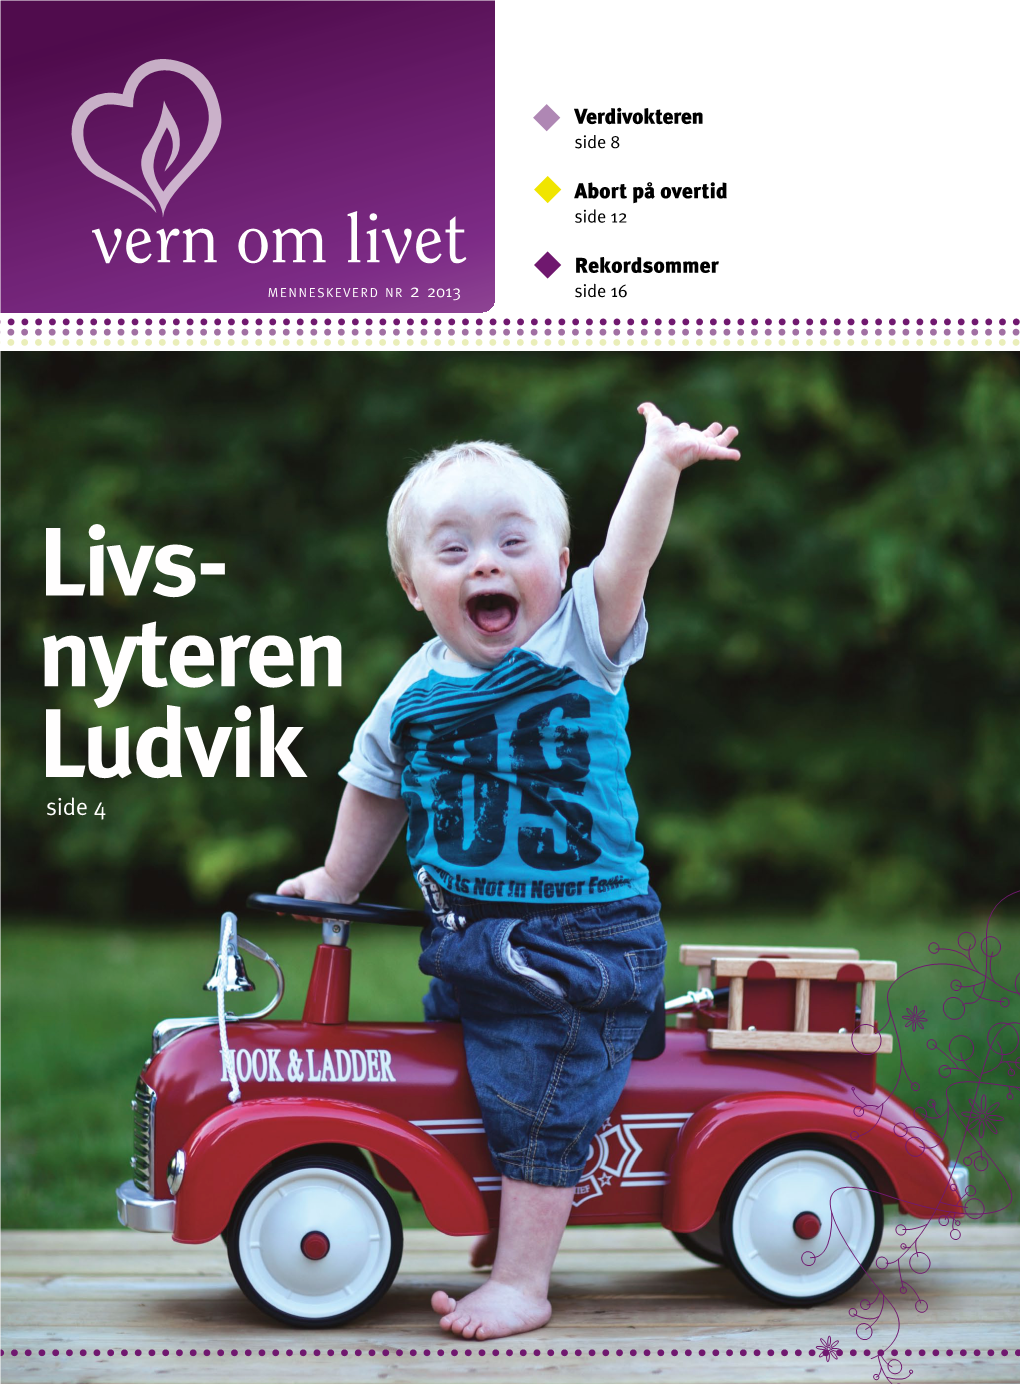 Livs- Nyteren Ludvik Side 4